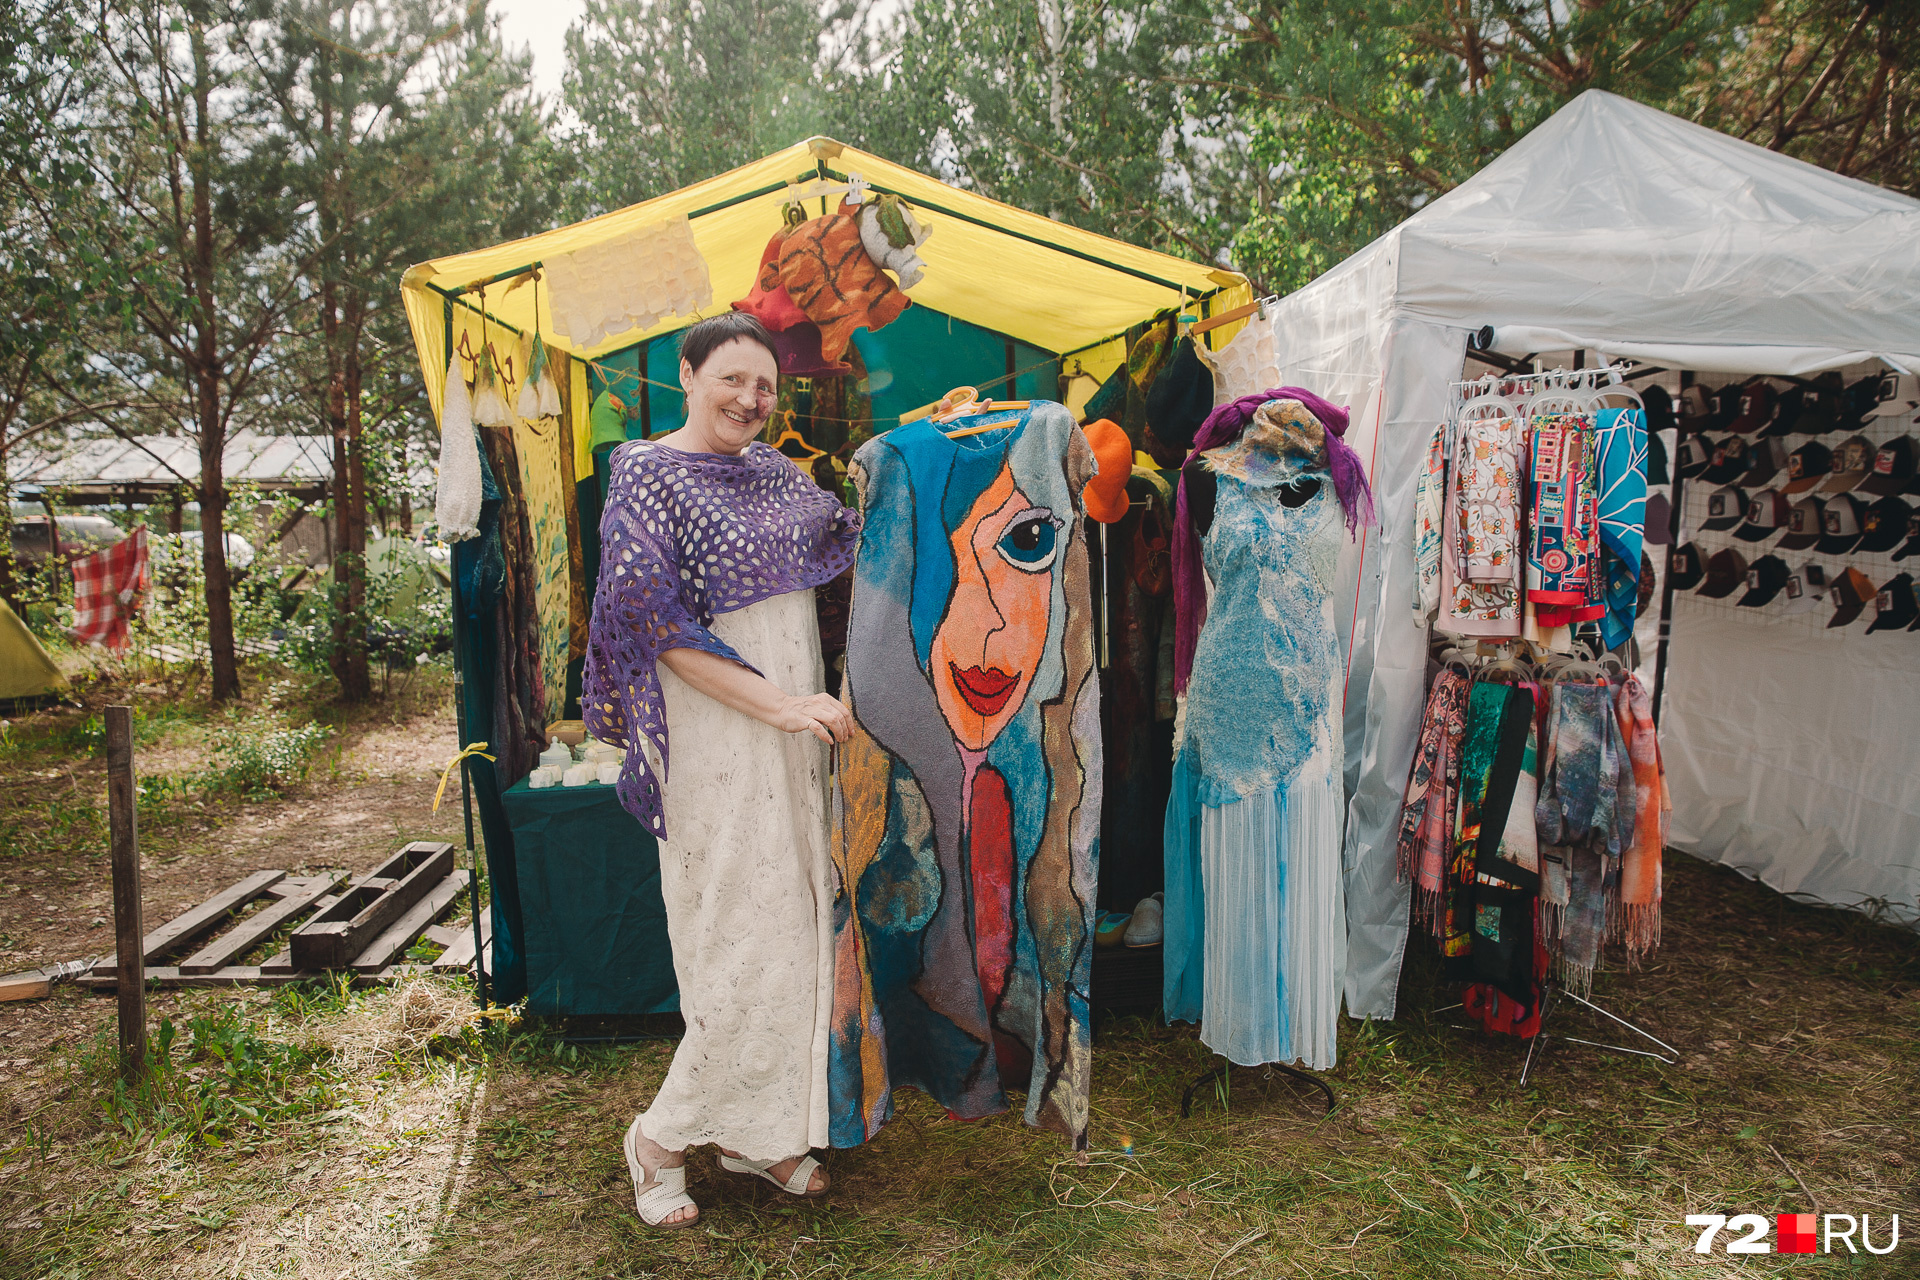 Фестиваль стал площадкой для торговцев изделий ручной работы. Здесь можно купить такие дизайнерские сарафаны из войлока